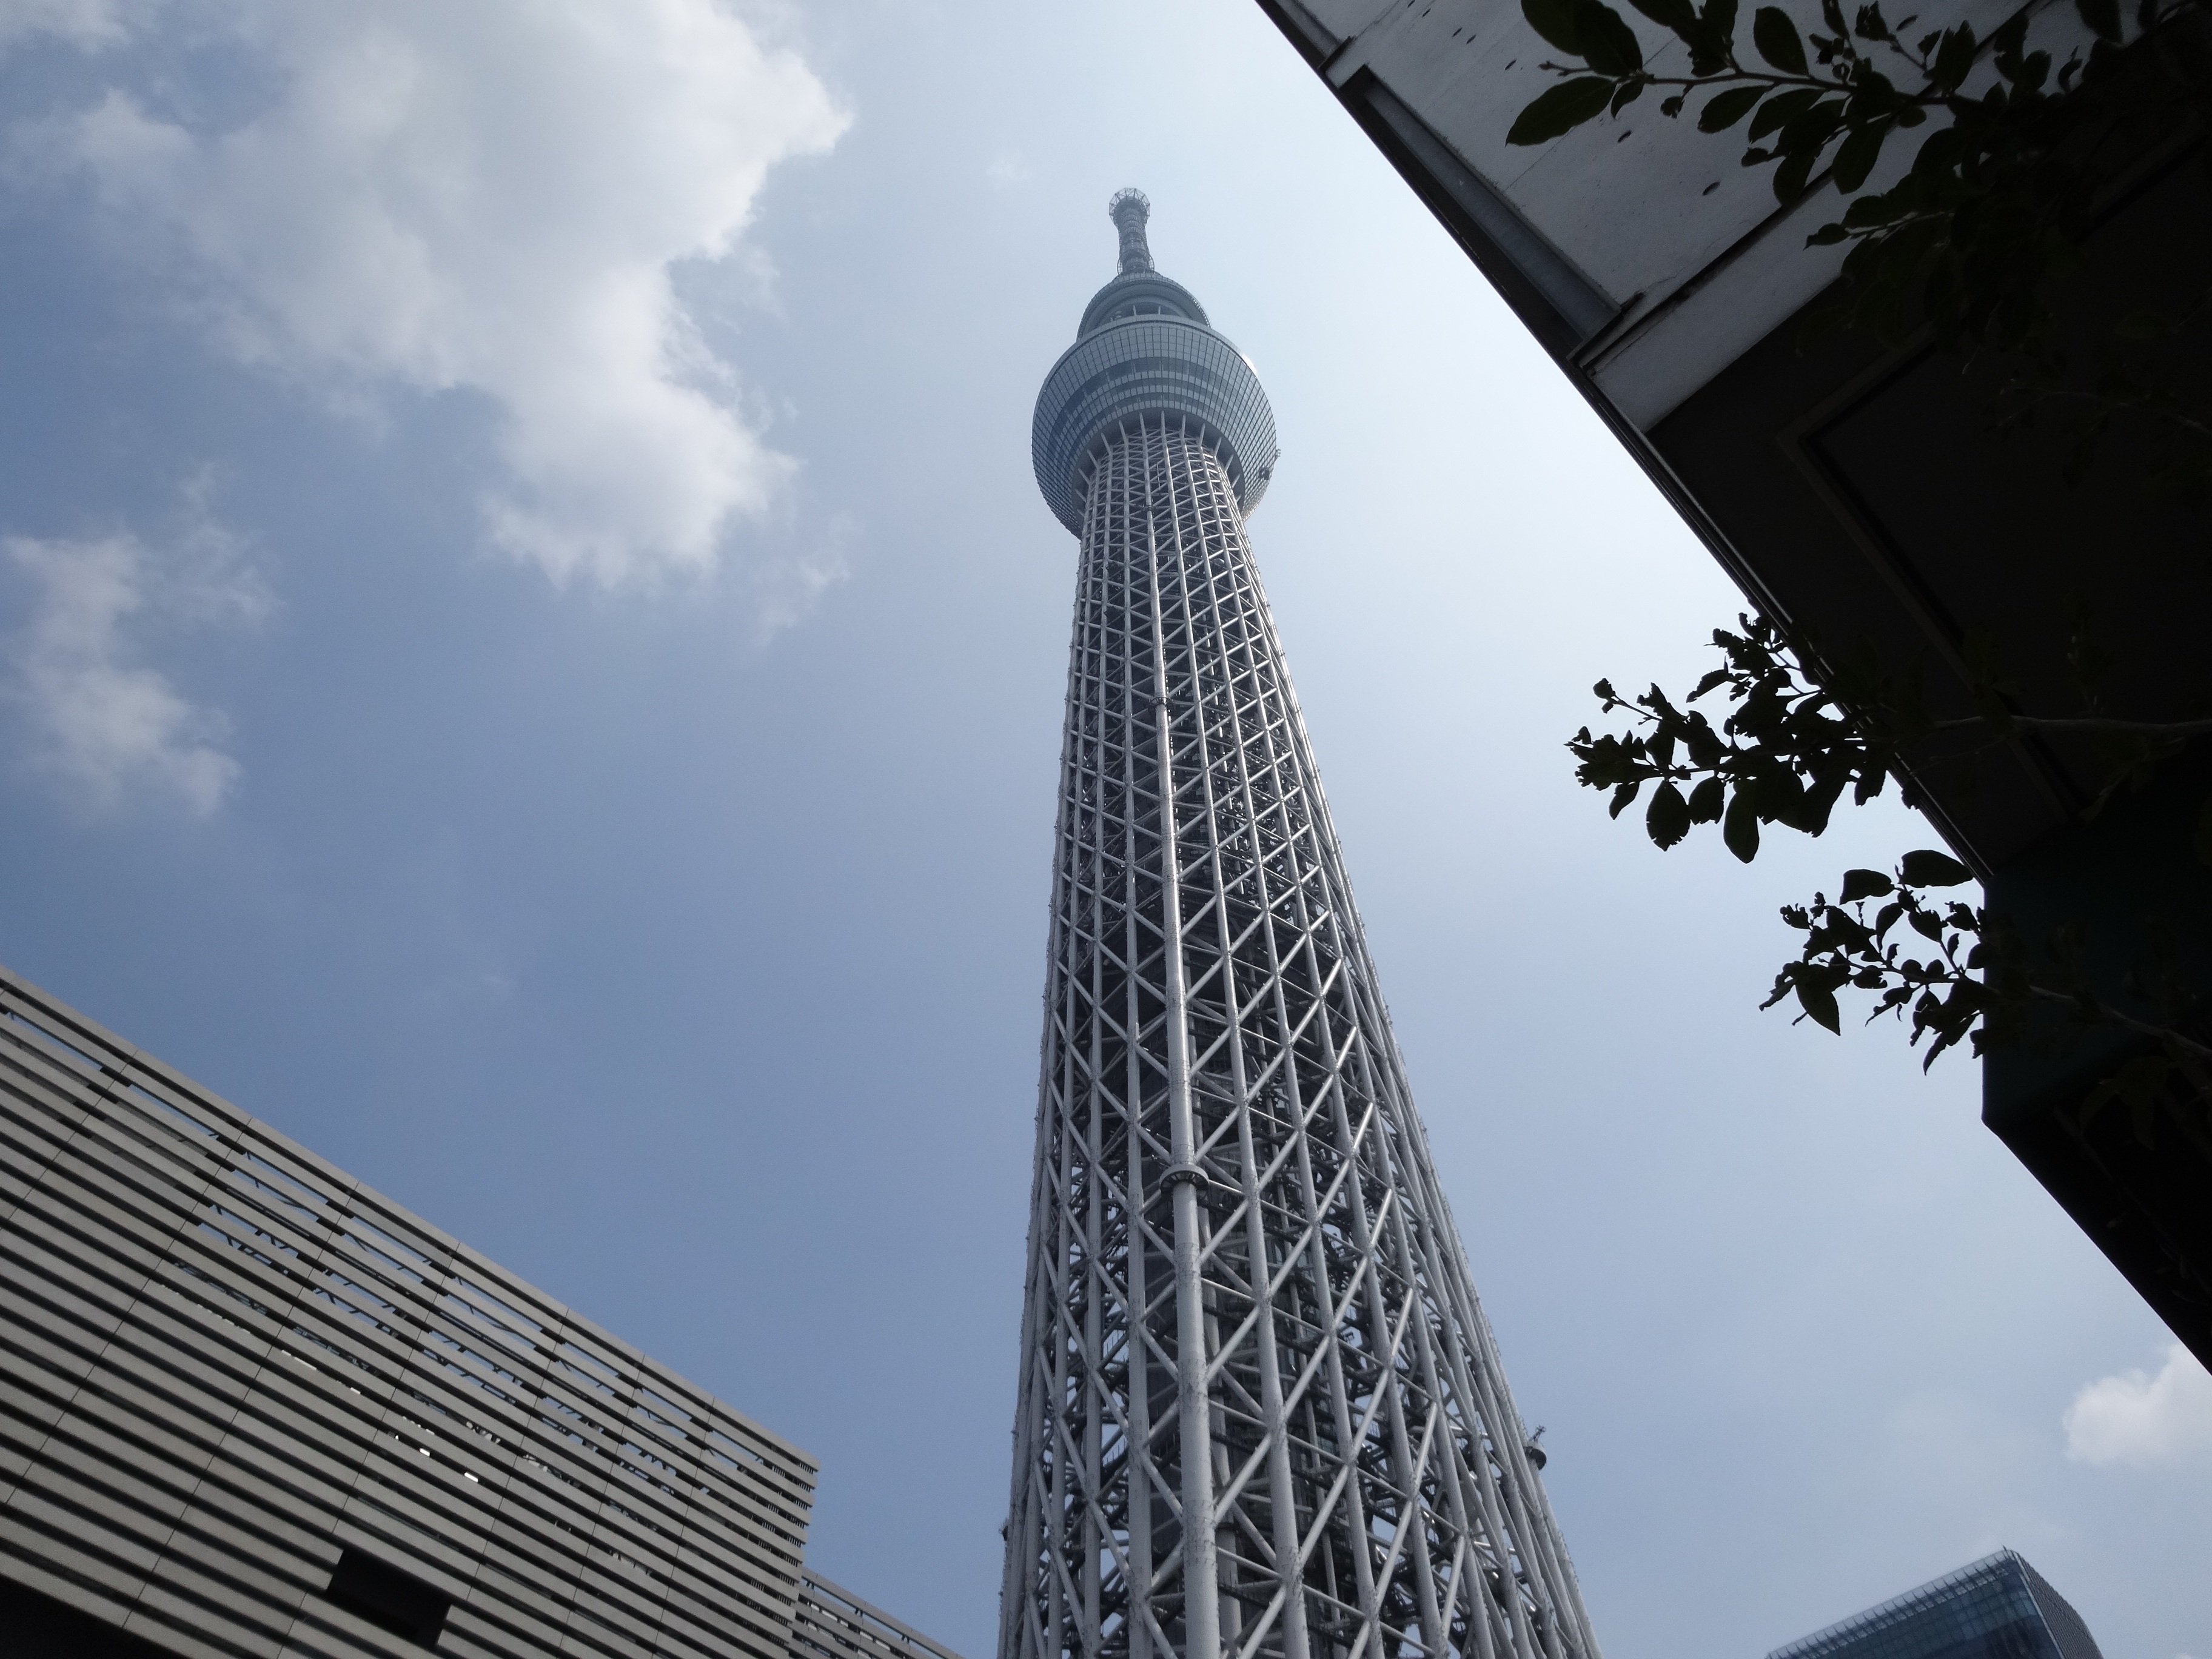 日本东京塔景色图片 图片 壁纸 桌酷